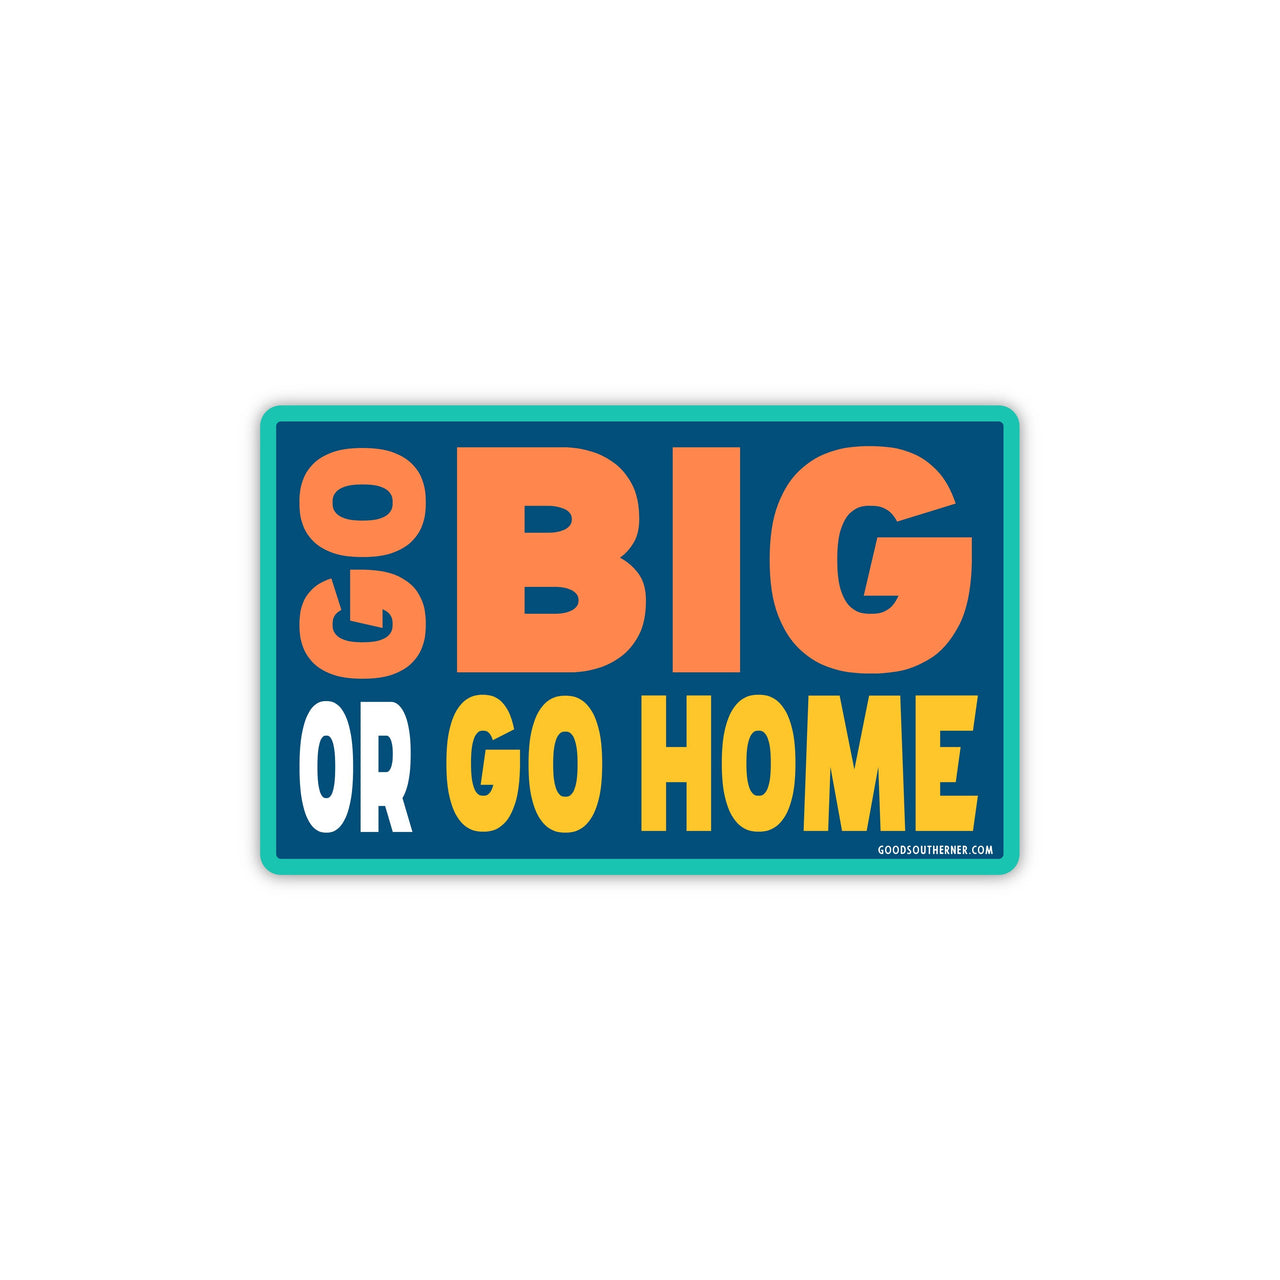 Go Big Or Go Home Sticker